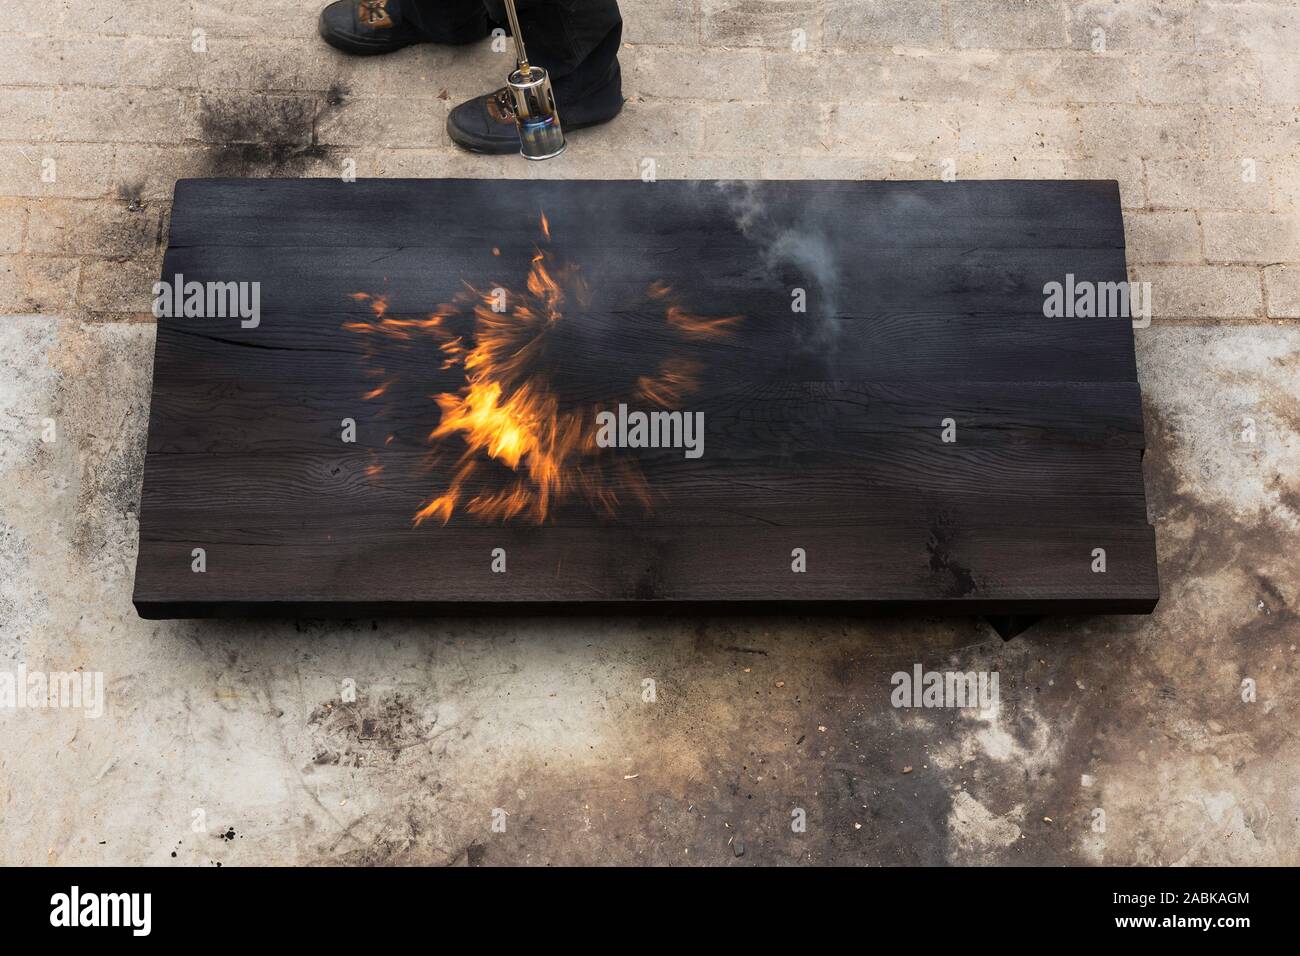 Ein Mann mit einer brennenden Fackel und Brennen ein grosses Stück eiche Erstellen von Flammen und Rauch, alte jappanese Shou sugi Verbot Technik. schwarz Holz- material. Gra Stockfoto